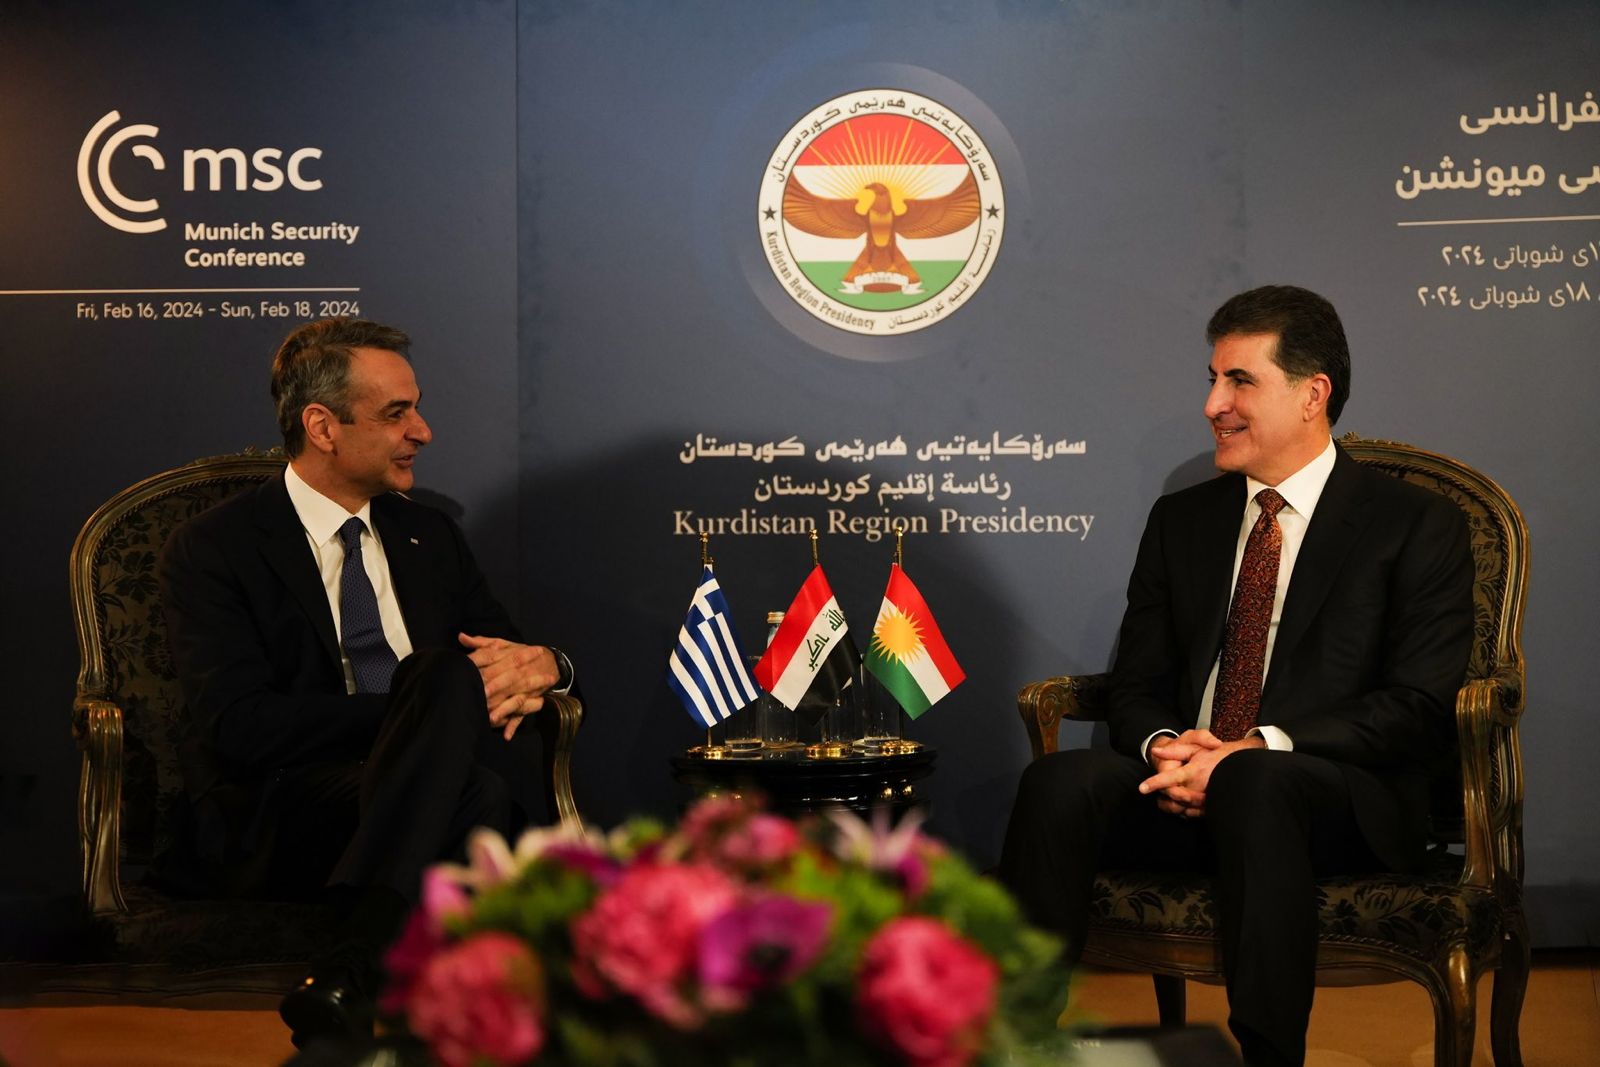 نيجيرفان بارزاني يبحث مع رئيس الوزراء اليوناني تعزيز العلاقات مع العراق وإقليم كوردستان